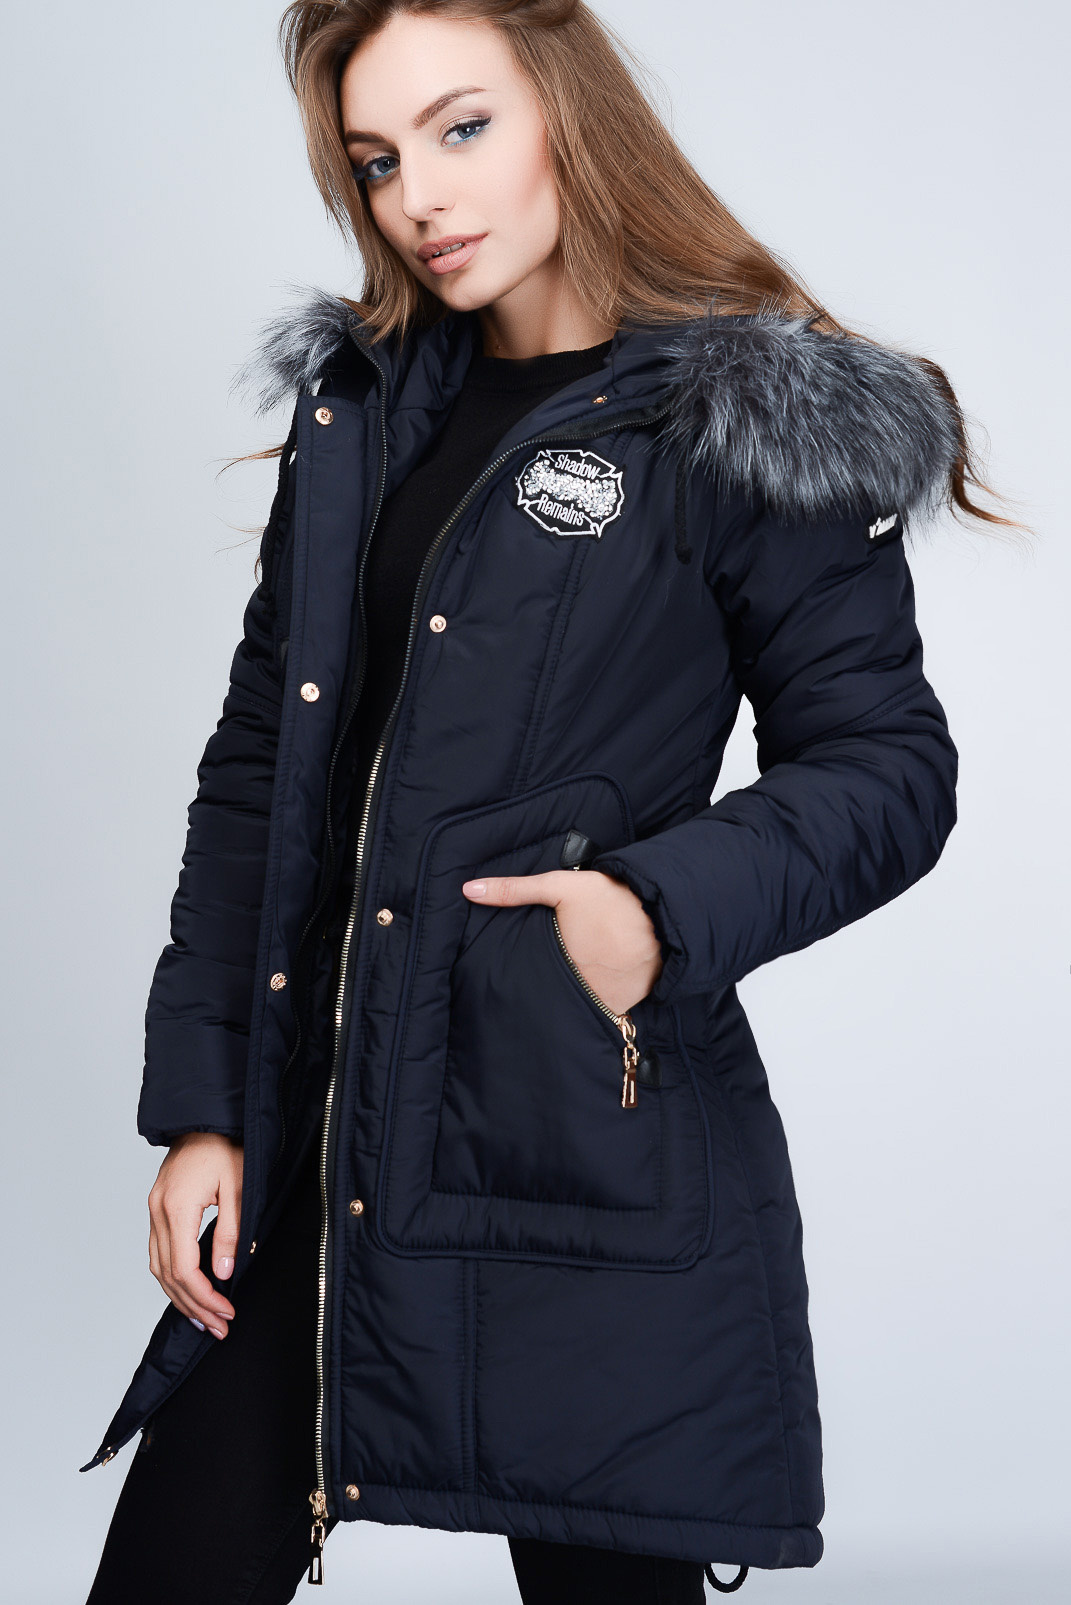 Зимние куртки женские распродажа